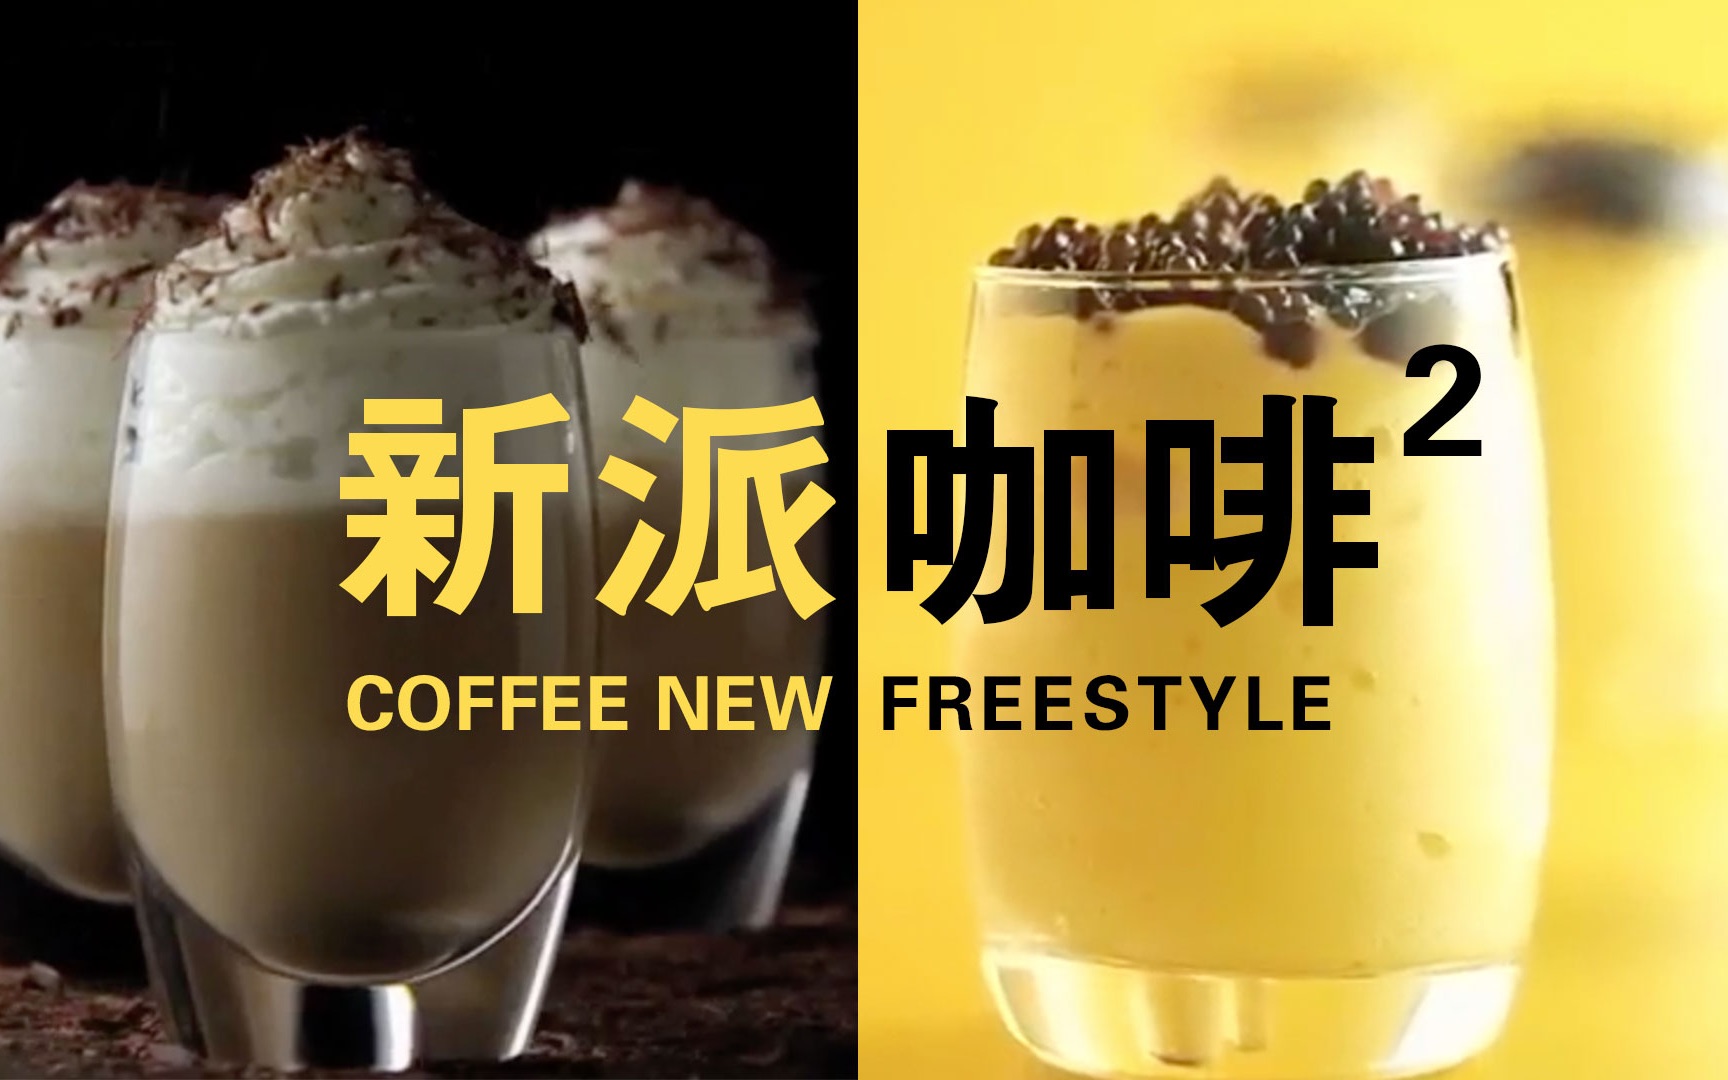 【新派咖啡二次方】两种咖啡全新做法 - by 上饮良品